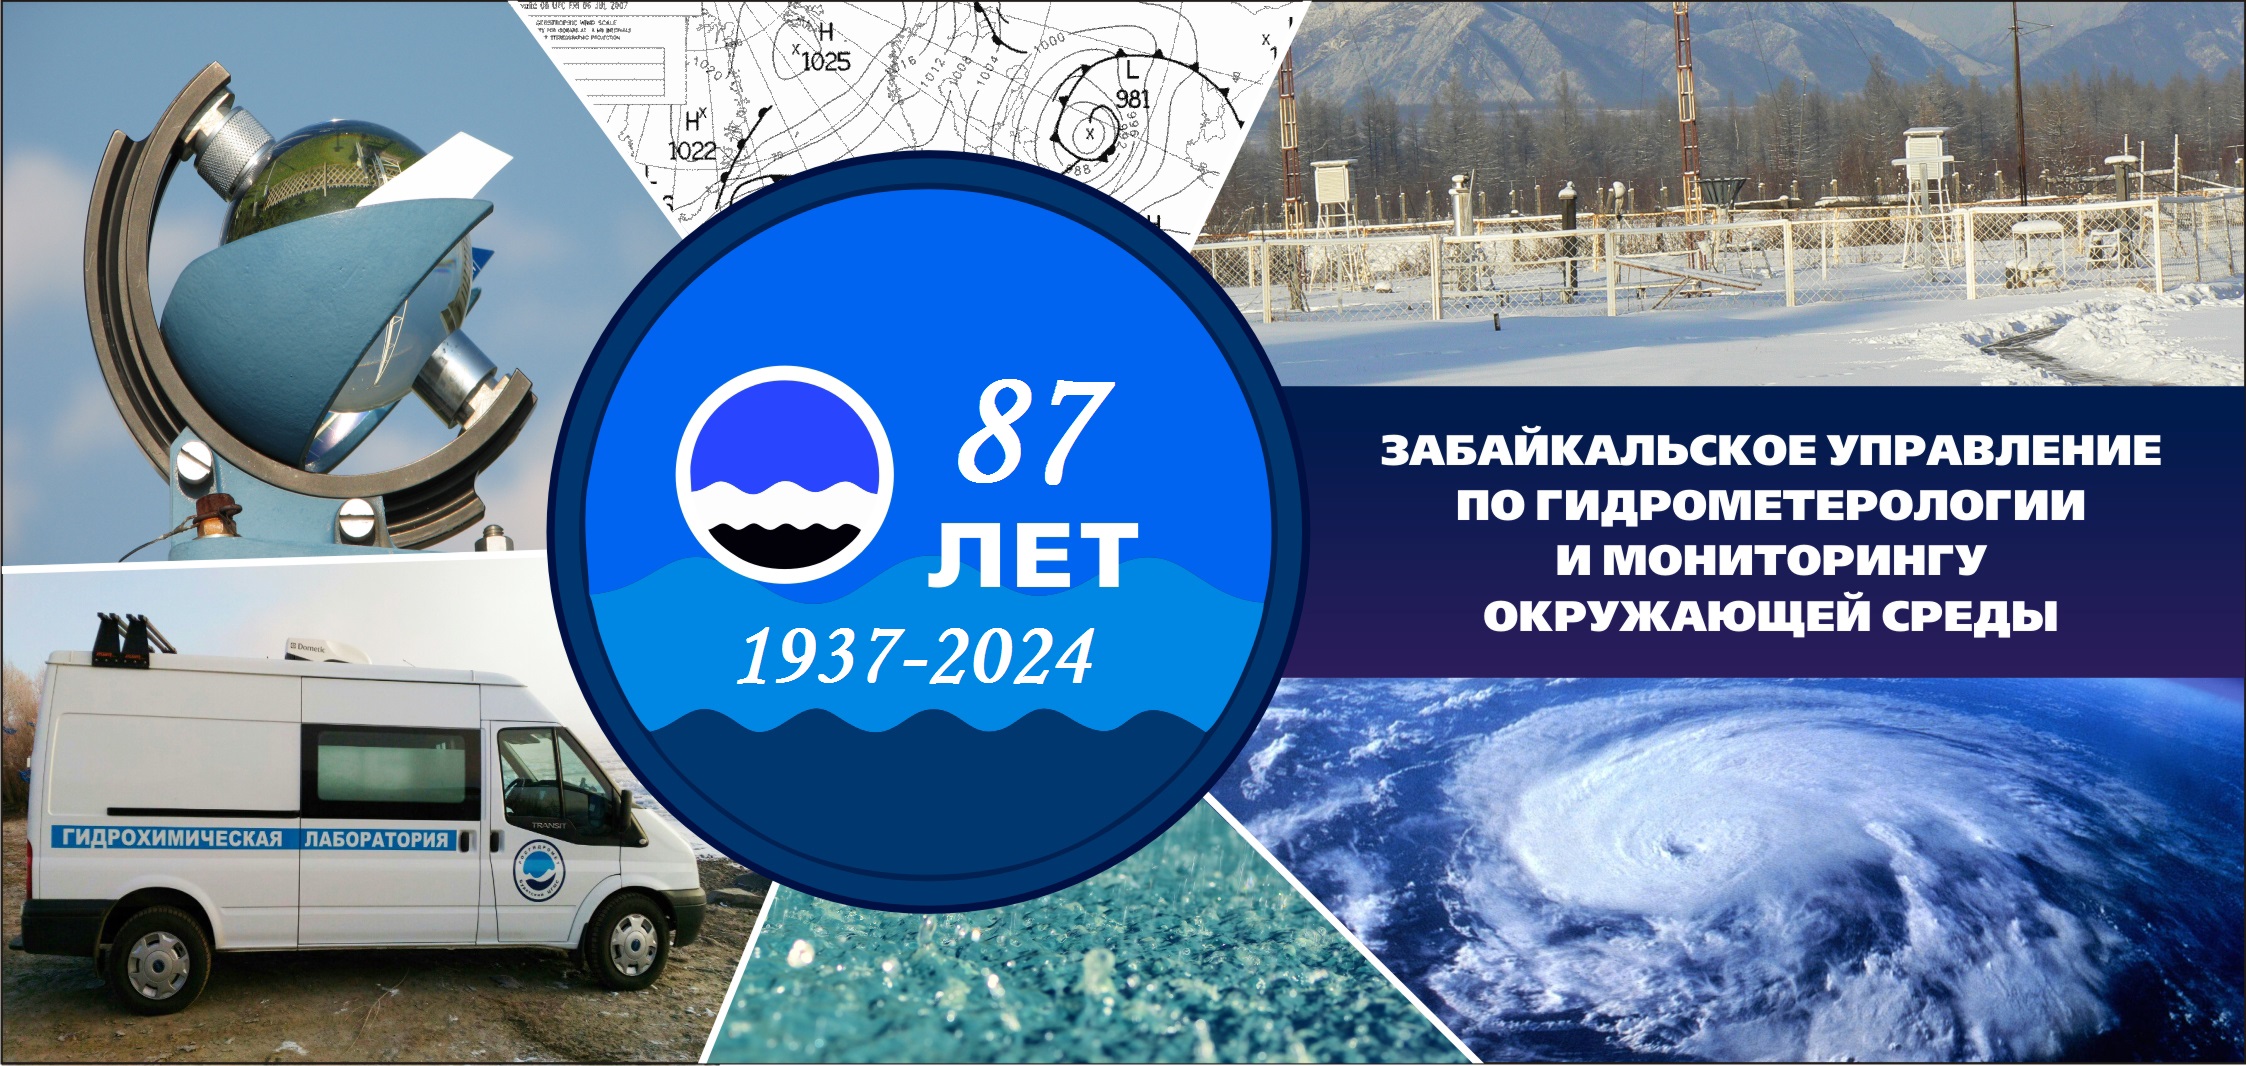 87 лет Забайкальскому управлению  по гидрометеорологии  и мониторингу окружающей среды